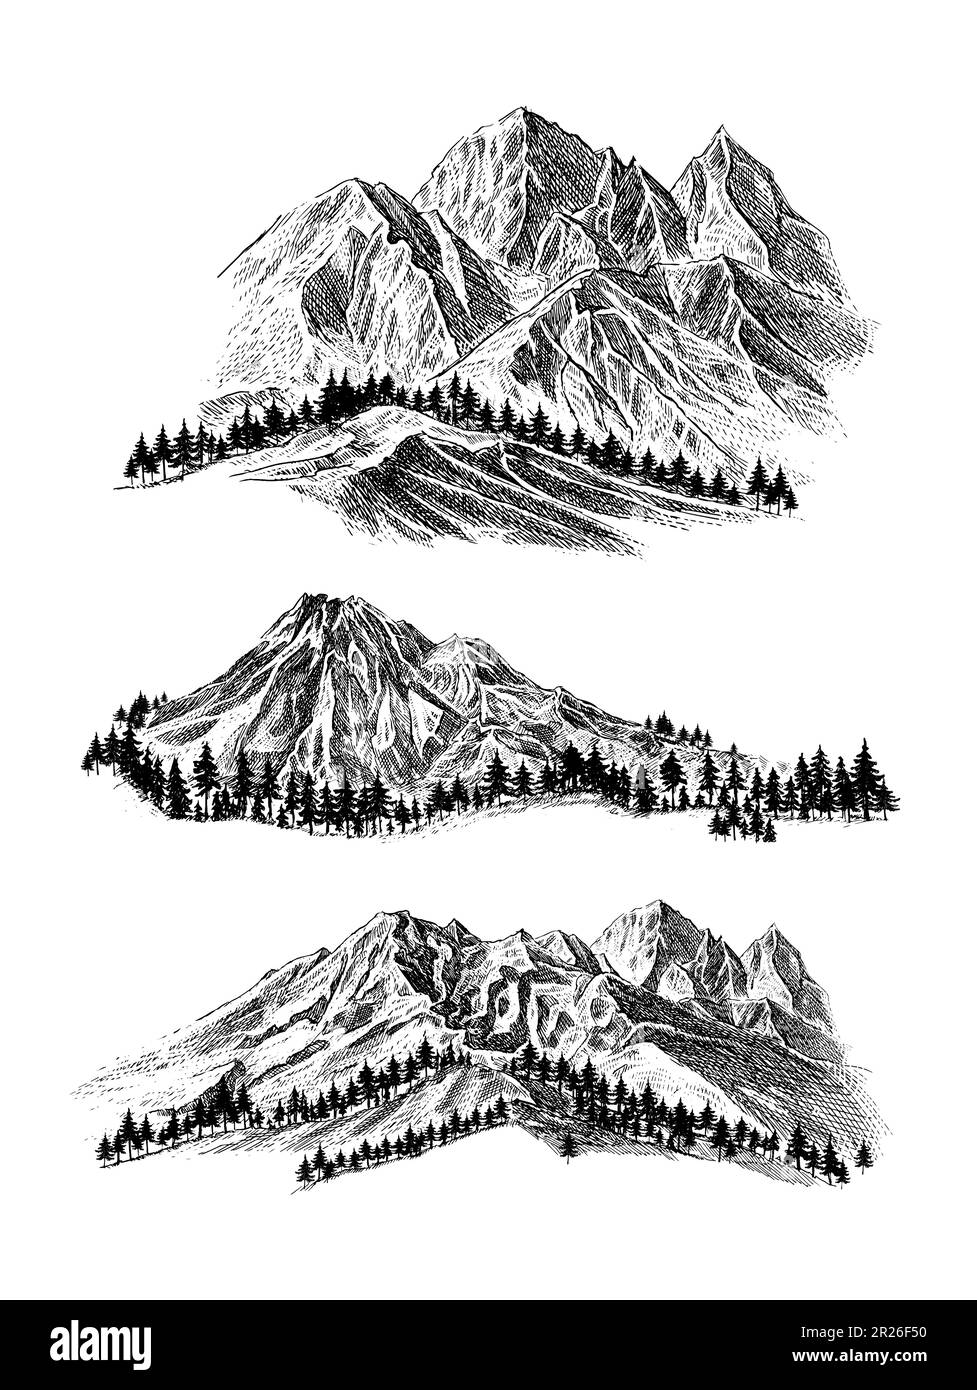 Montagne avec pins et paysage noir sur fond blanc. Pics rocheux dessinés à la main dans un style d'esquisse. Illustration vectorielle. Illustration de Vecteur